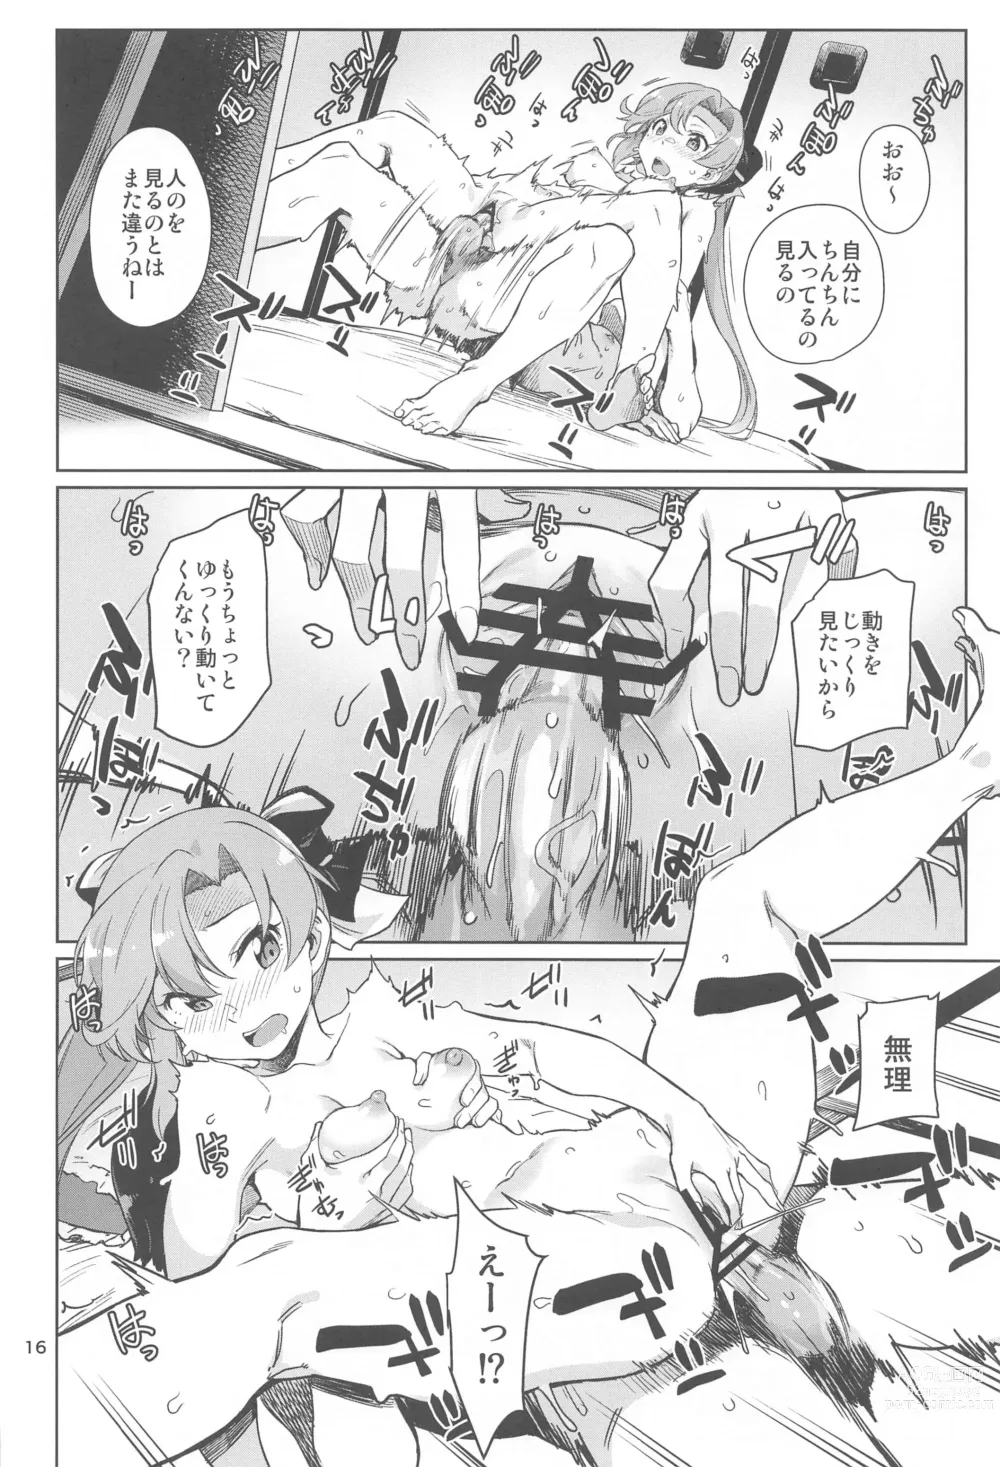 Page 16 of doujinshi Kinaki to Yomu